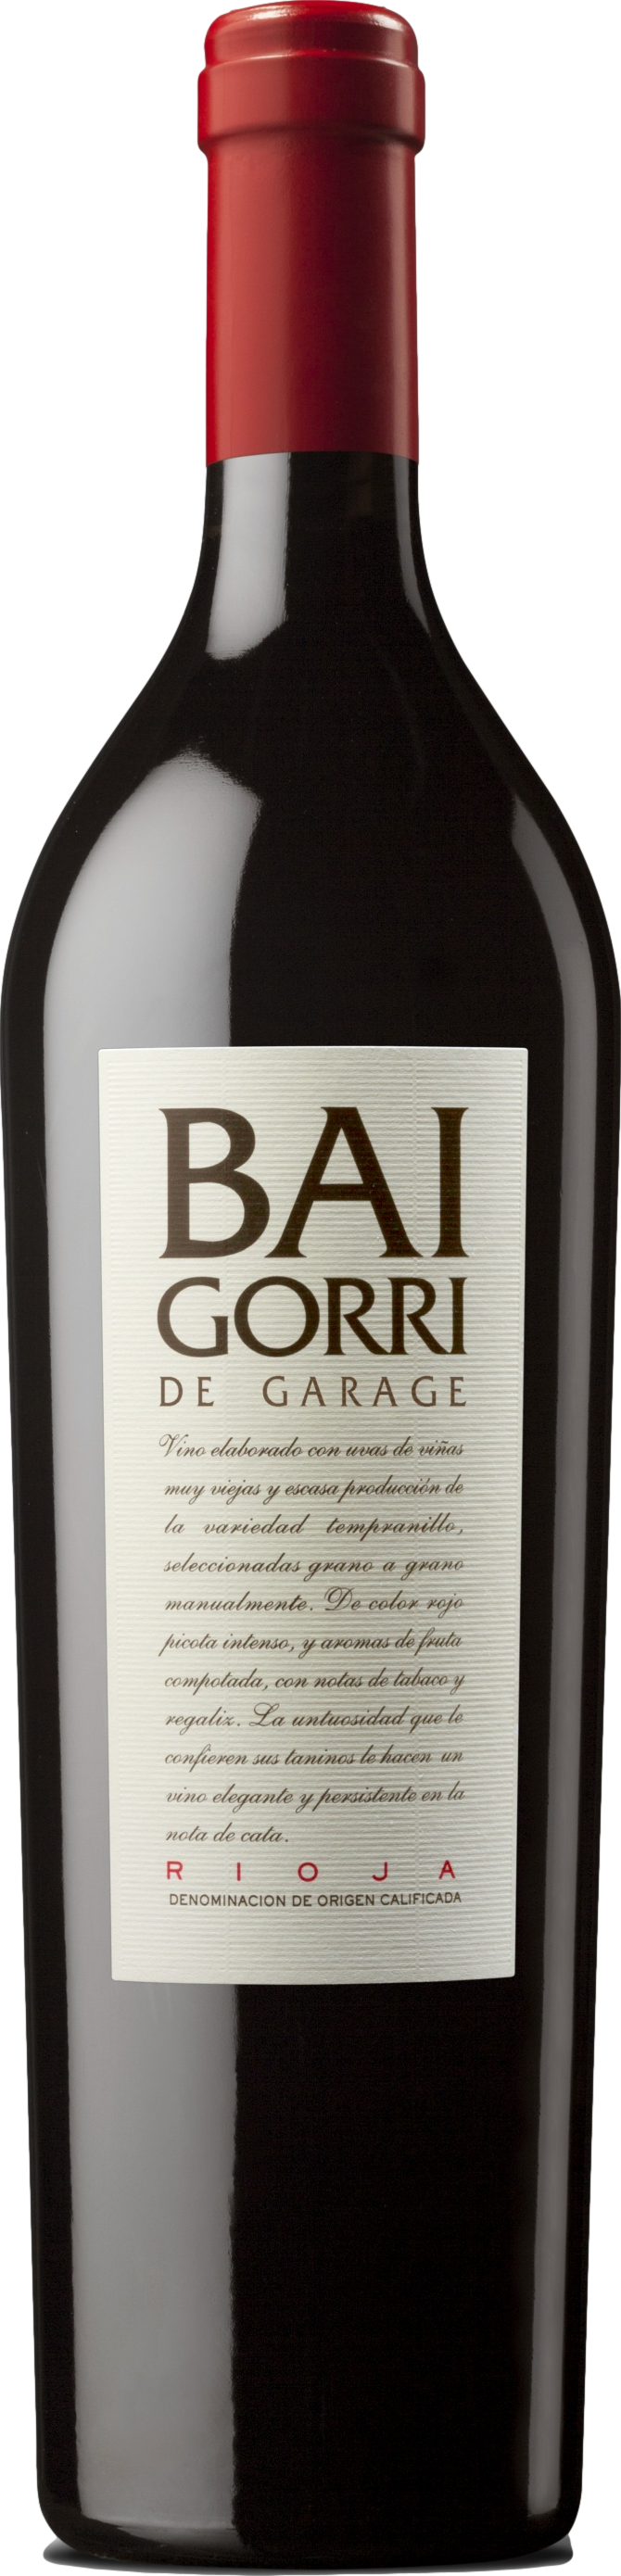 2018 1 günstig Kaufen-Baigorri De Garage Rioja 2018. Baigorri De Garage Rioja 2018 . 